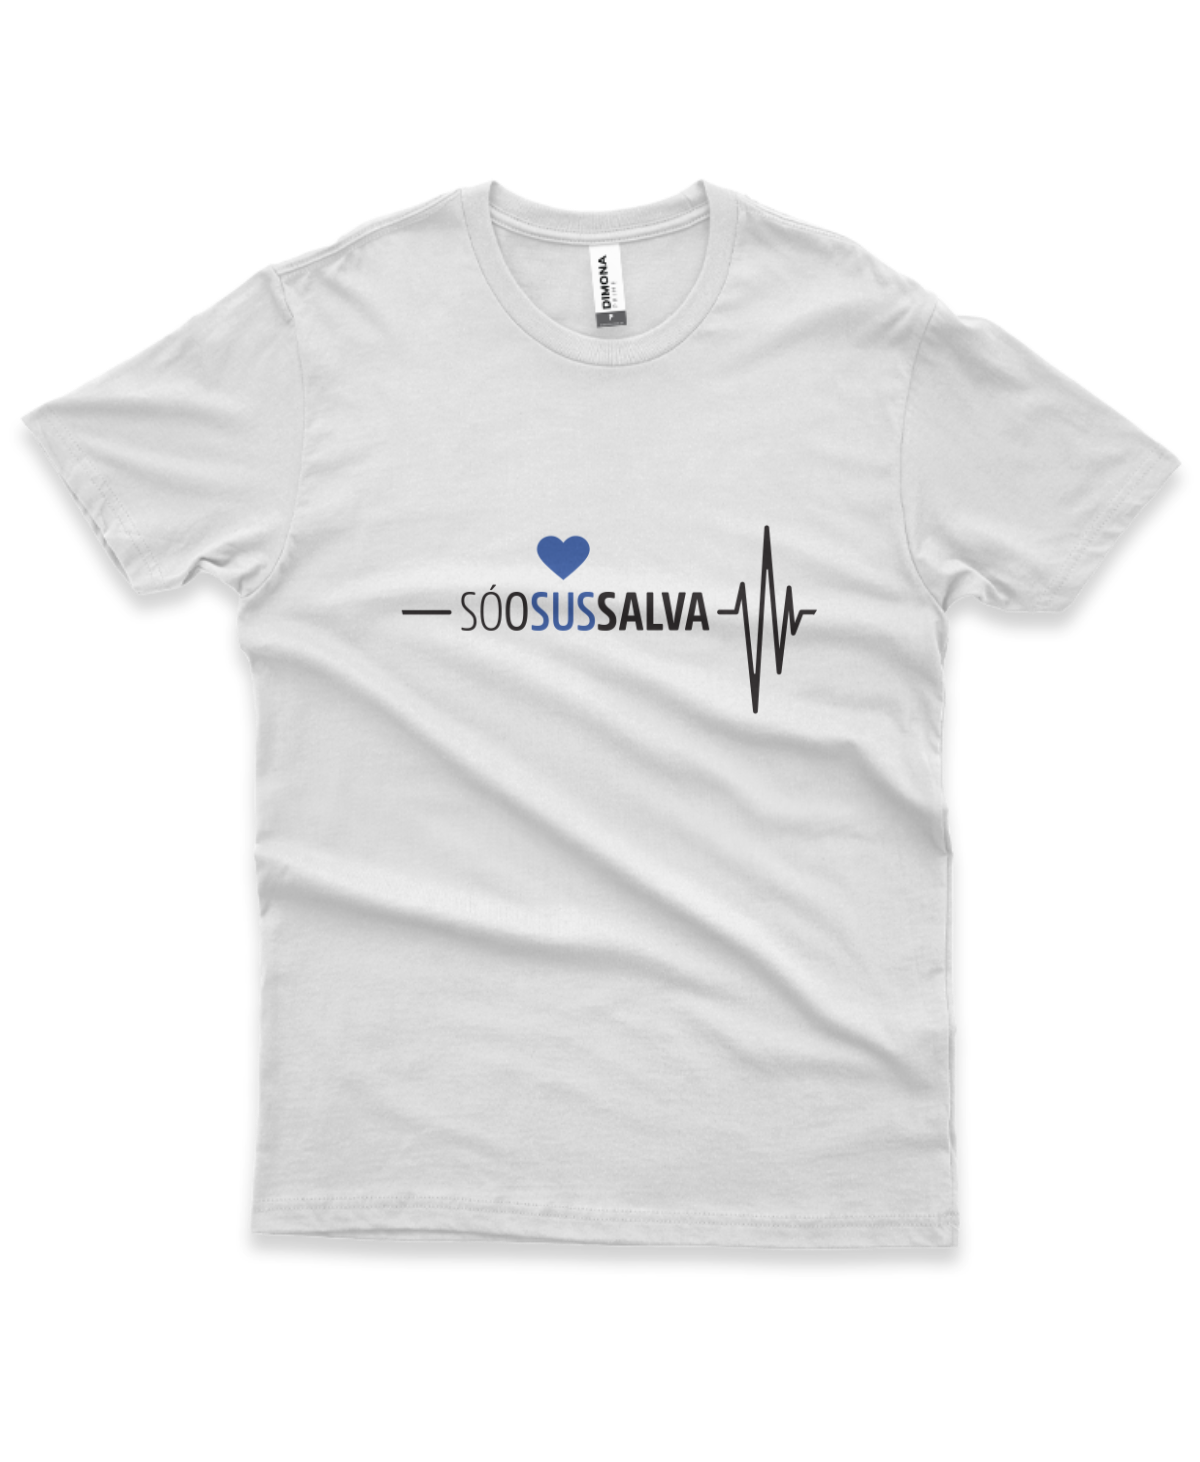 camiseta masculina cor branca com a ilustração de um coração e eletrocardiograma e a frase "Só o SUS salva"